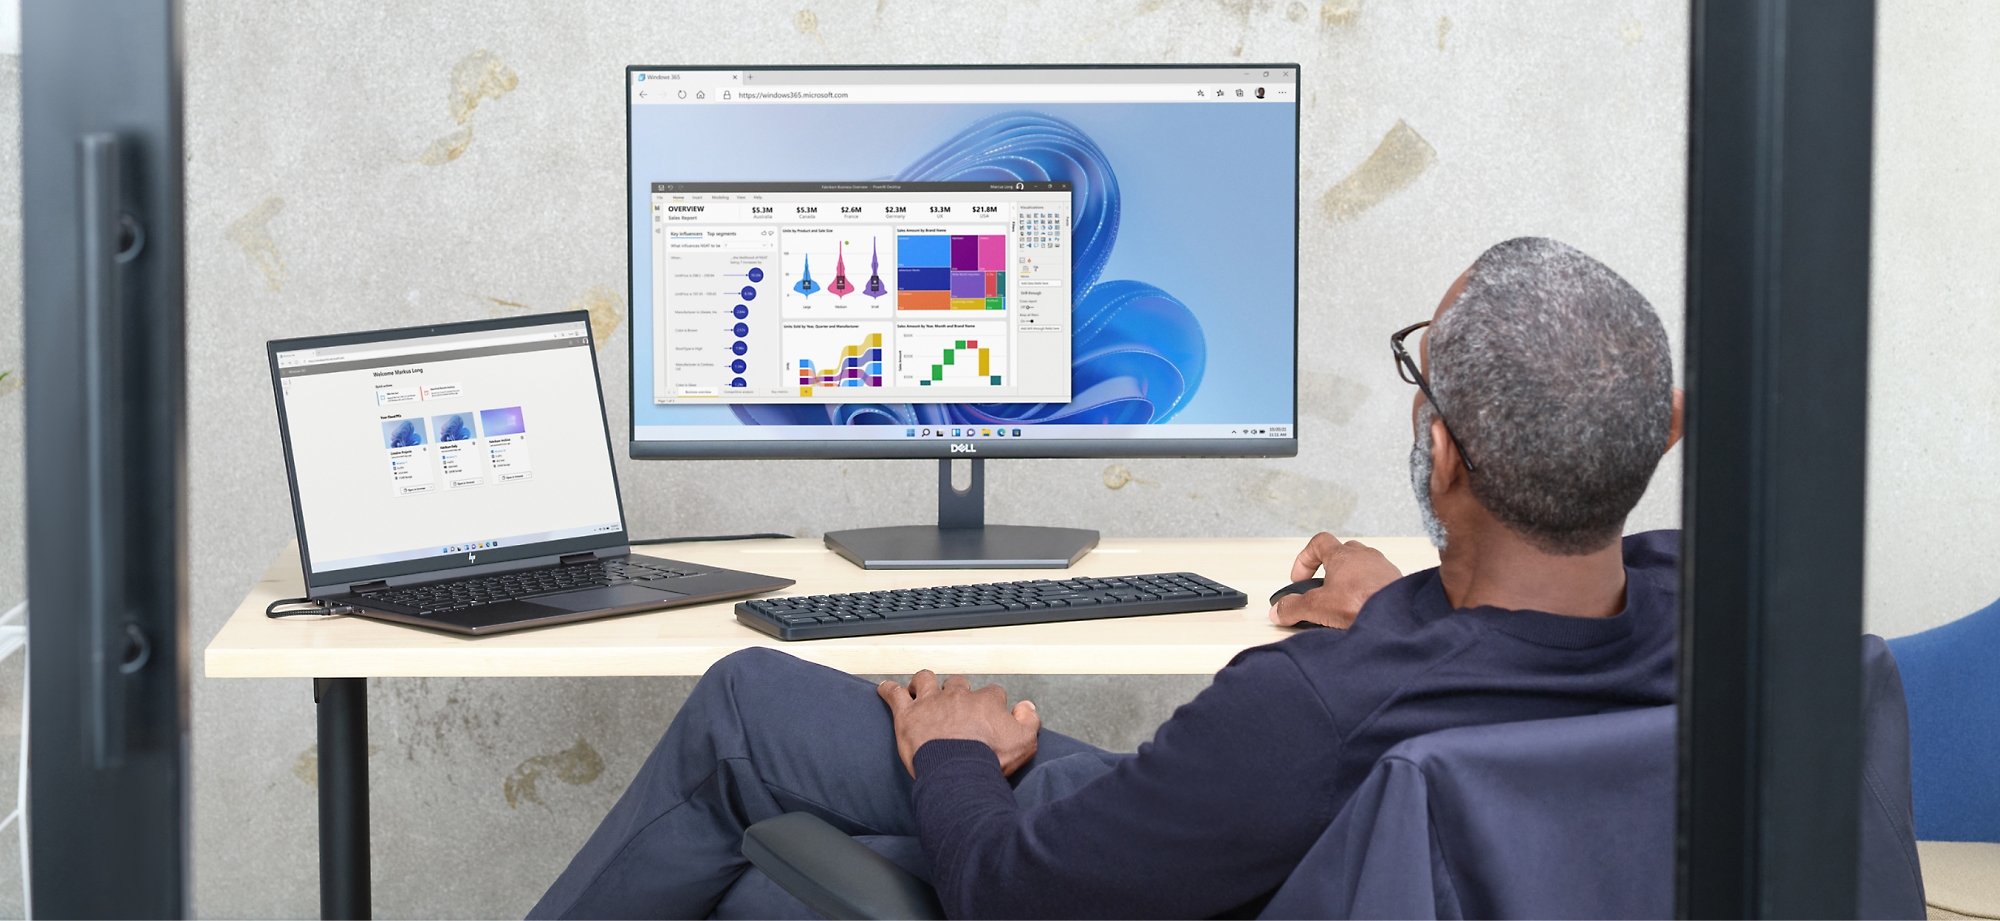 Ein Mann prüft in einer Büroumgebung Datendiagramme auf einem Computerbildschirm und einem Laptop.